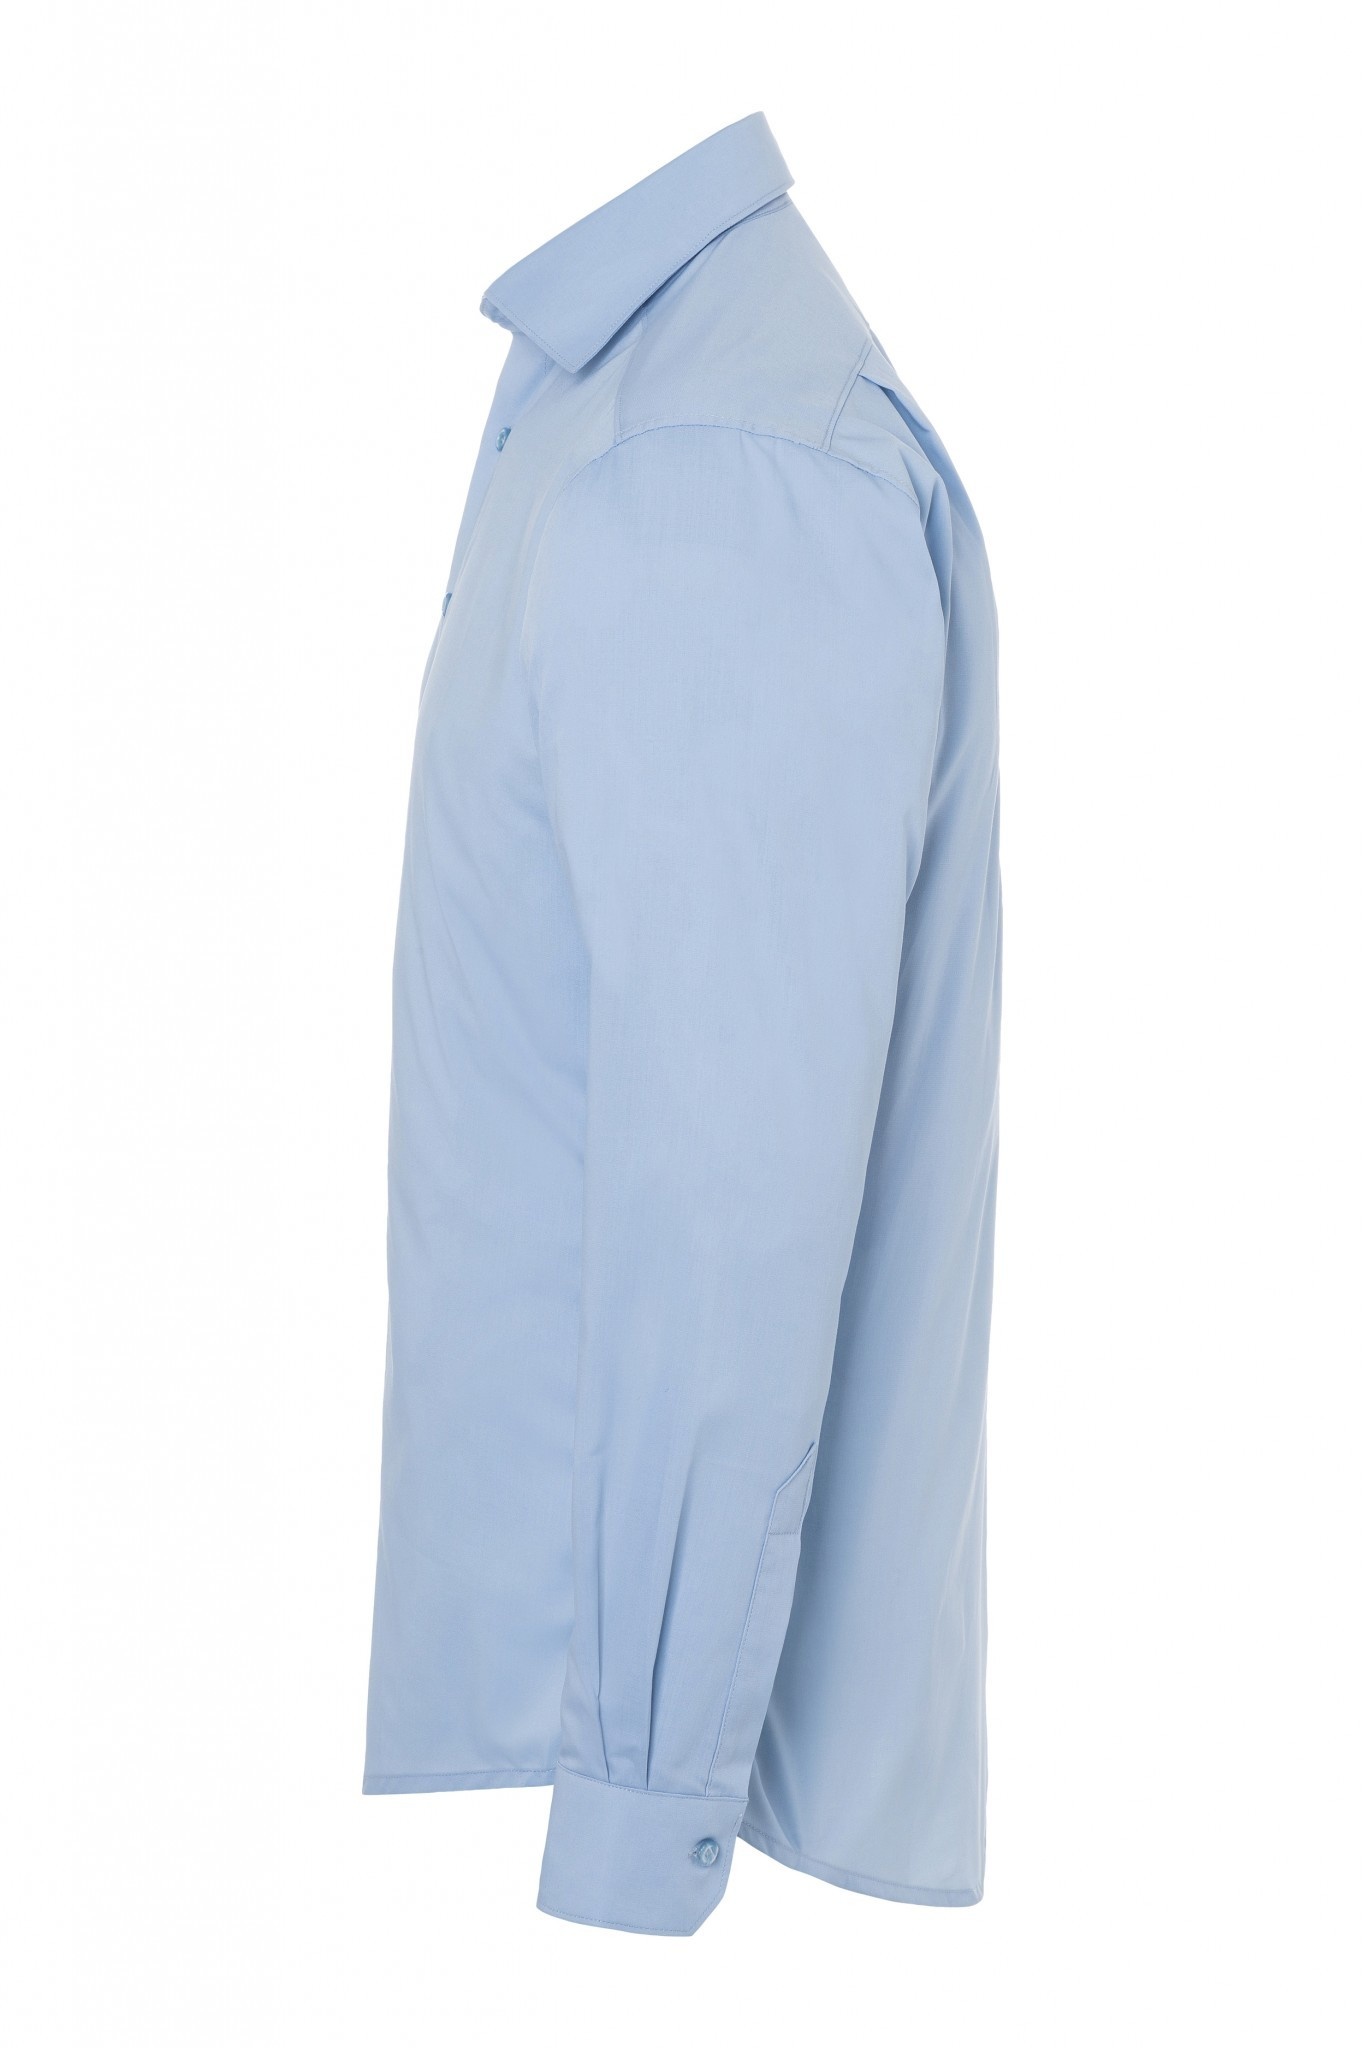 Herrenhemd Miro | Hellblau | 49% Polyester / 49% Baumwolle / 2% Elastolefin | Erhältlich in 8 Größen